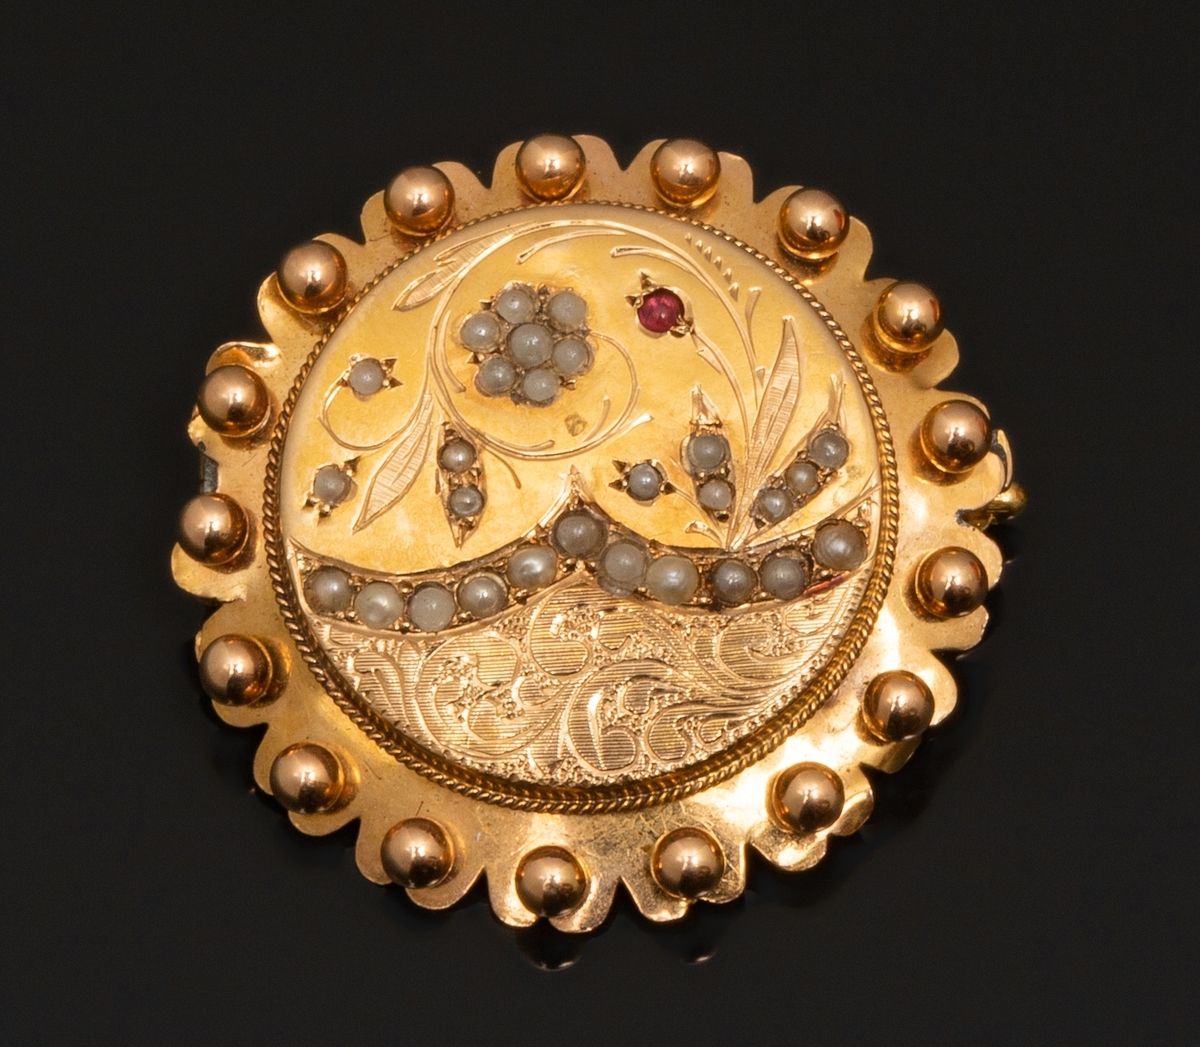 Null 18K黄金（千分之七十五）圆形胸针，装饰有仿珍珠和一个小型红色玻璃凸圆形的花卉图案。轮廓颗粒化。背面有焊接点。
直径：3.2厘米。
毛重：5.6克。